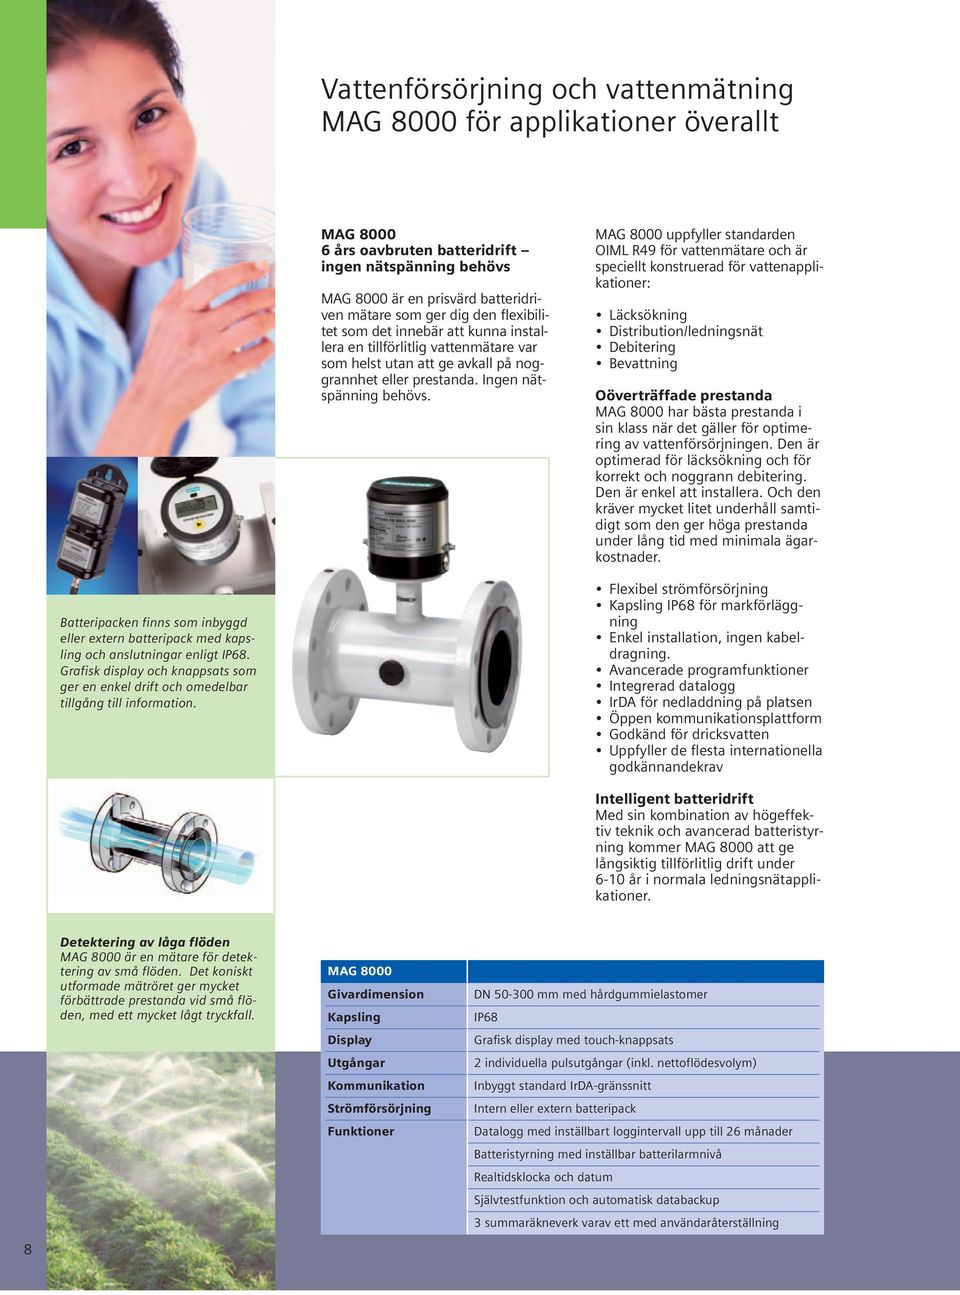 MAG 8000 uppfyller standarden OIML R49 för vattenmätare och är speciellt konstruerad för vattenapplikationer: Läcksökning Distribution/ledningsnät Debitering Bevattning Oöverträffade prestanda MAG